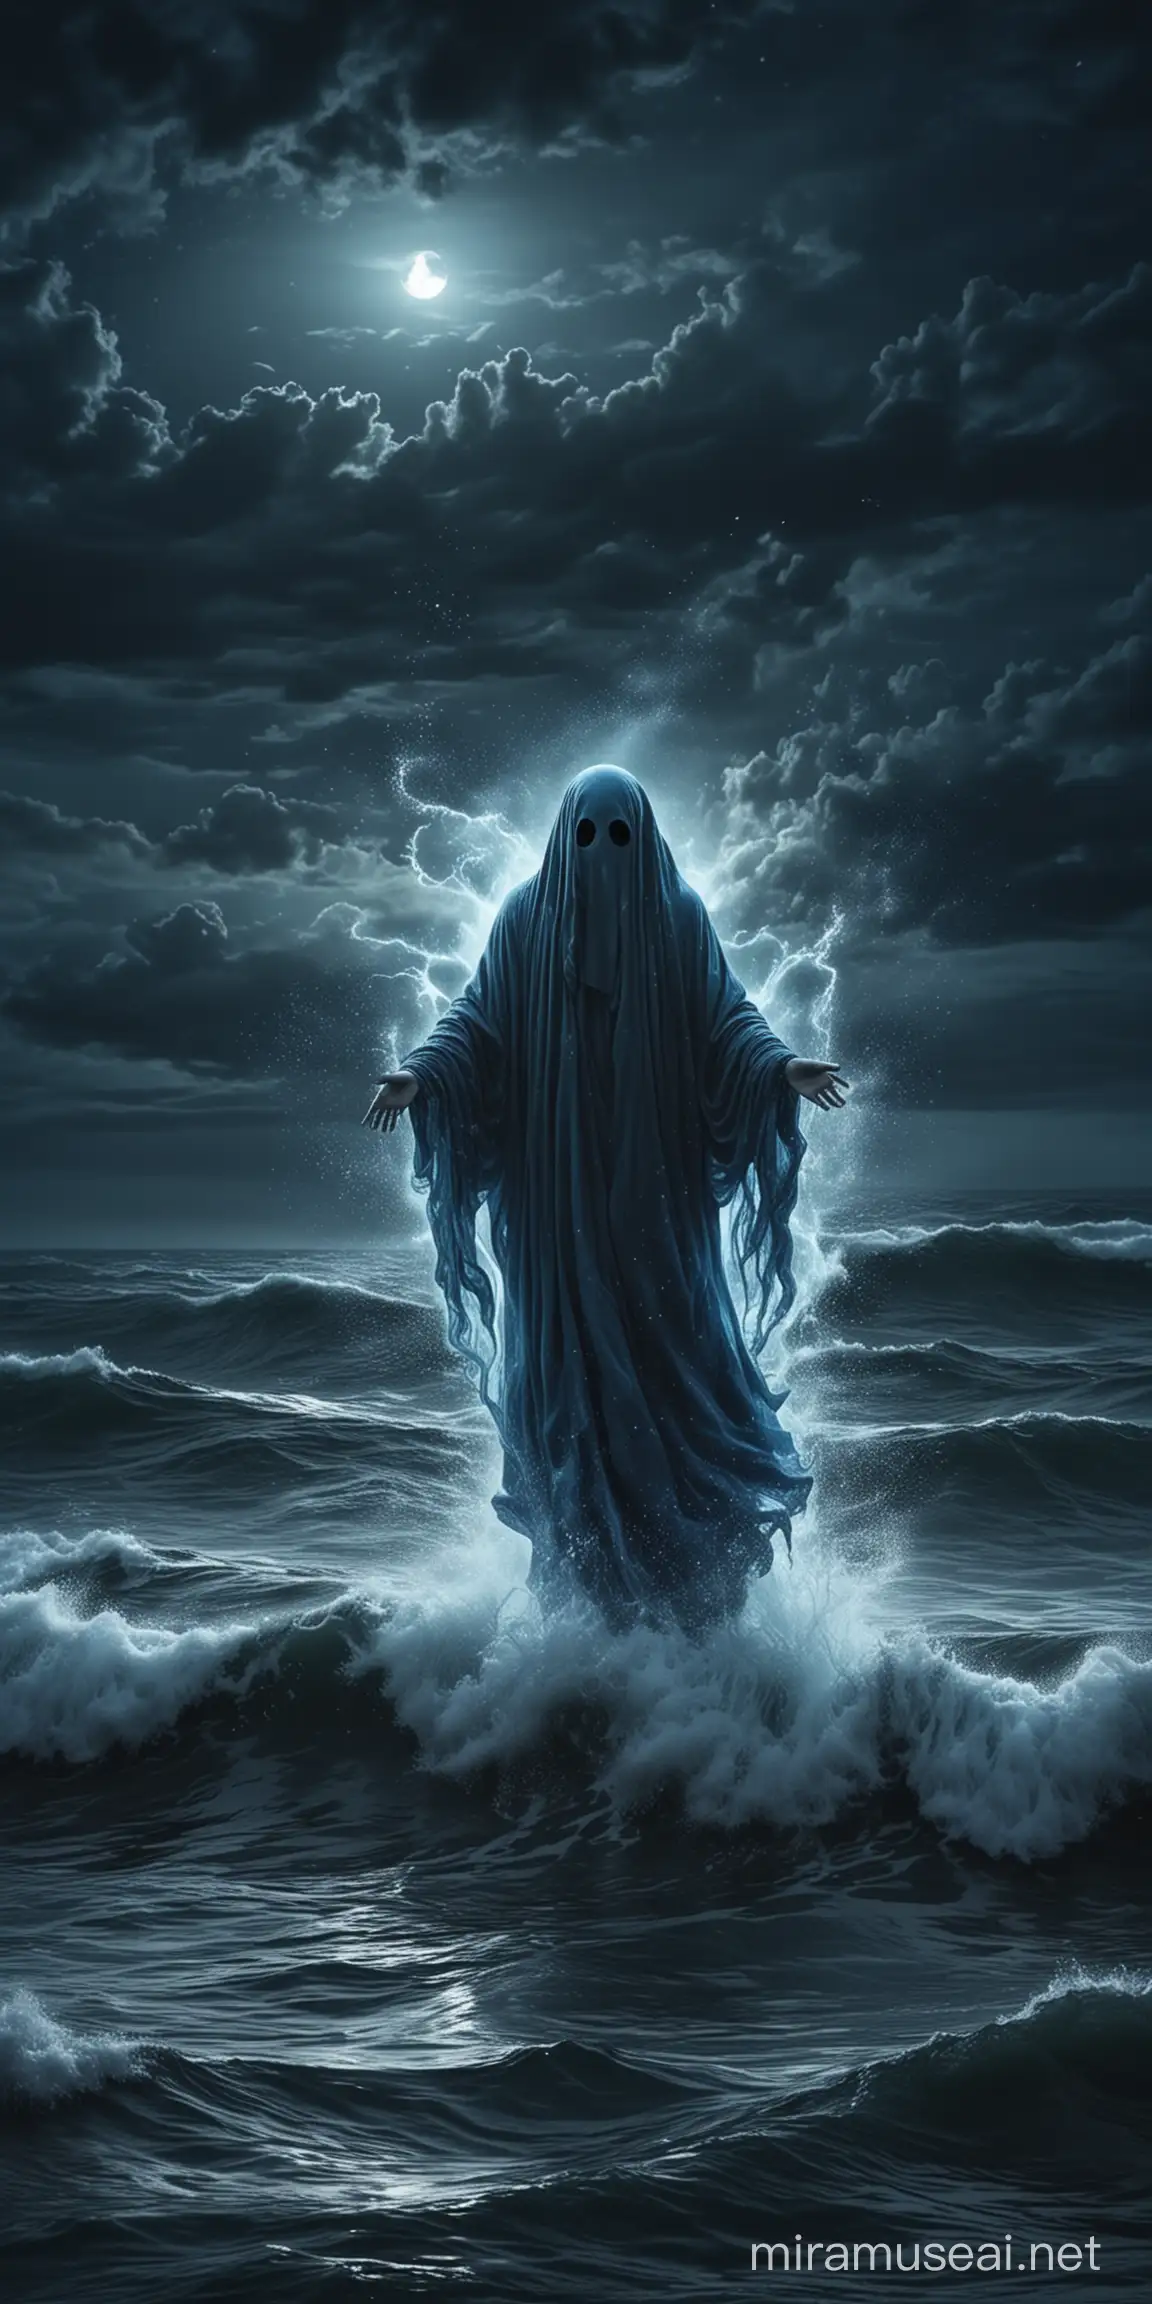 Містичний привид летить над темнім синім штормовим морем в ночі